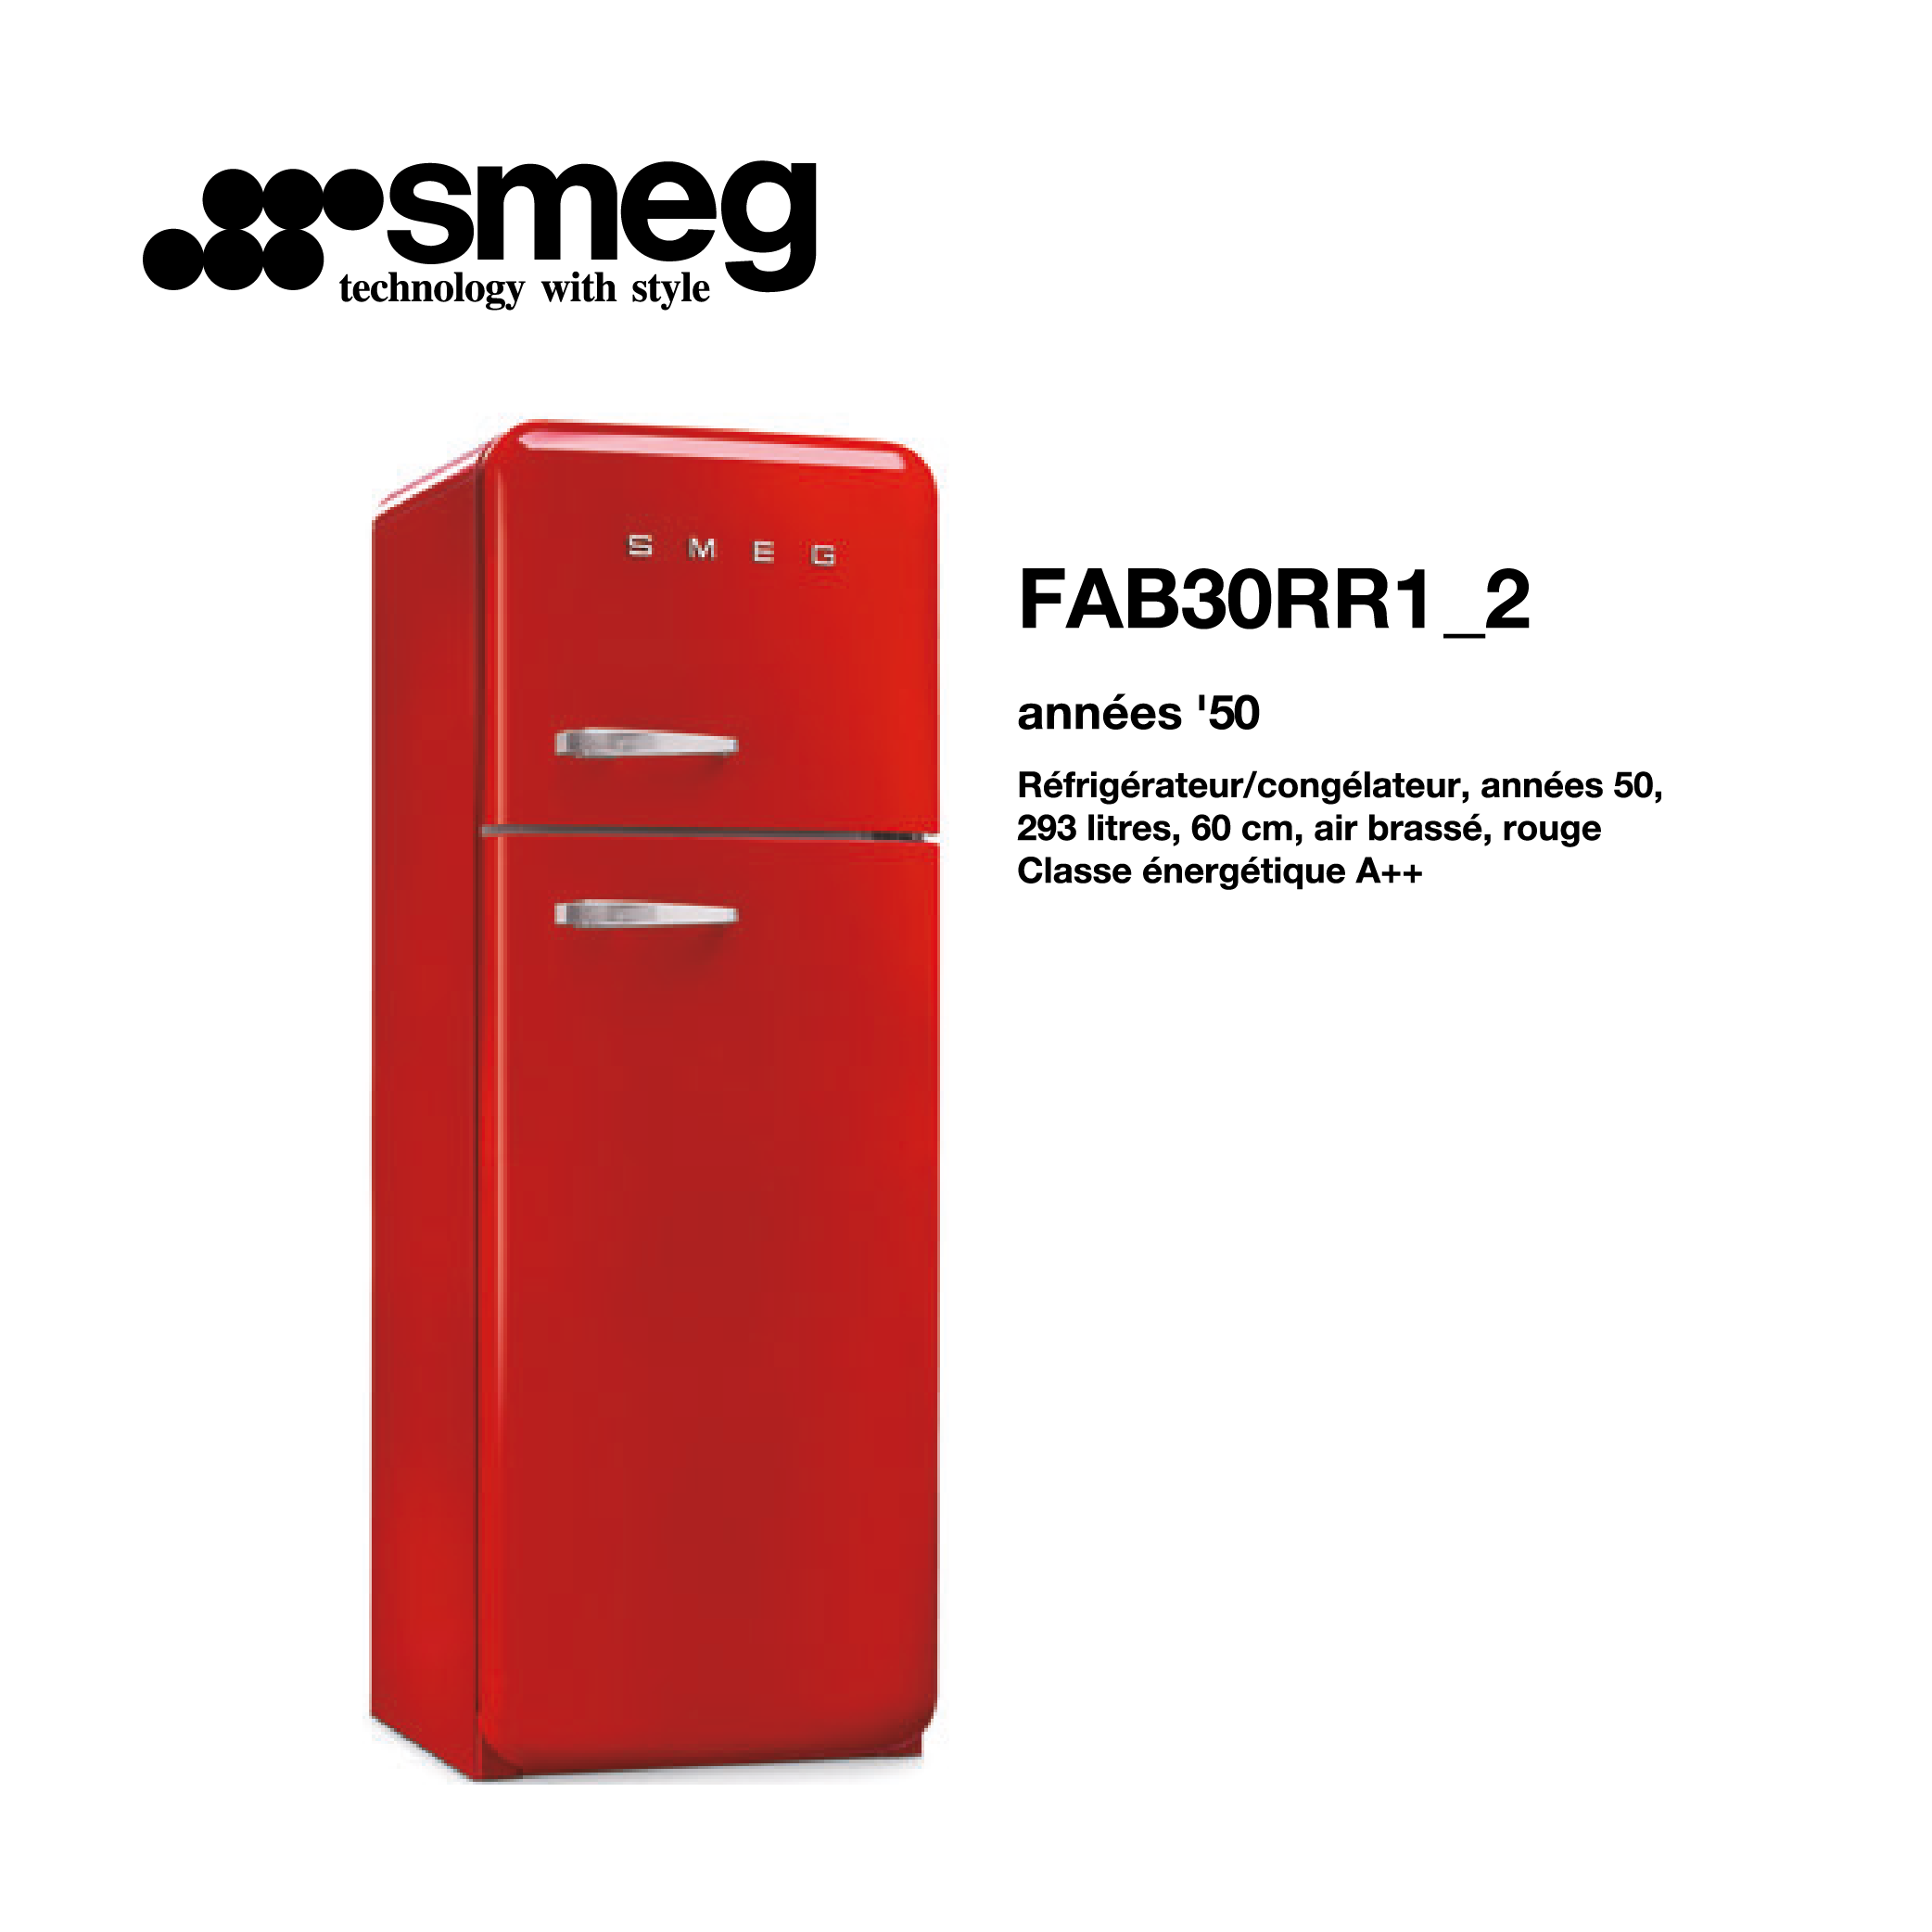 Réfrigérateur congélateur smeg Air brassé 293 Litre 60cm couleur Rouge 2 portes style années 50 FAB30RR1_2